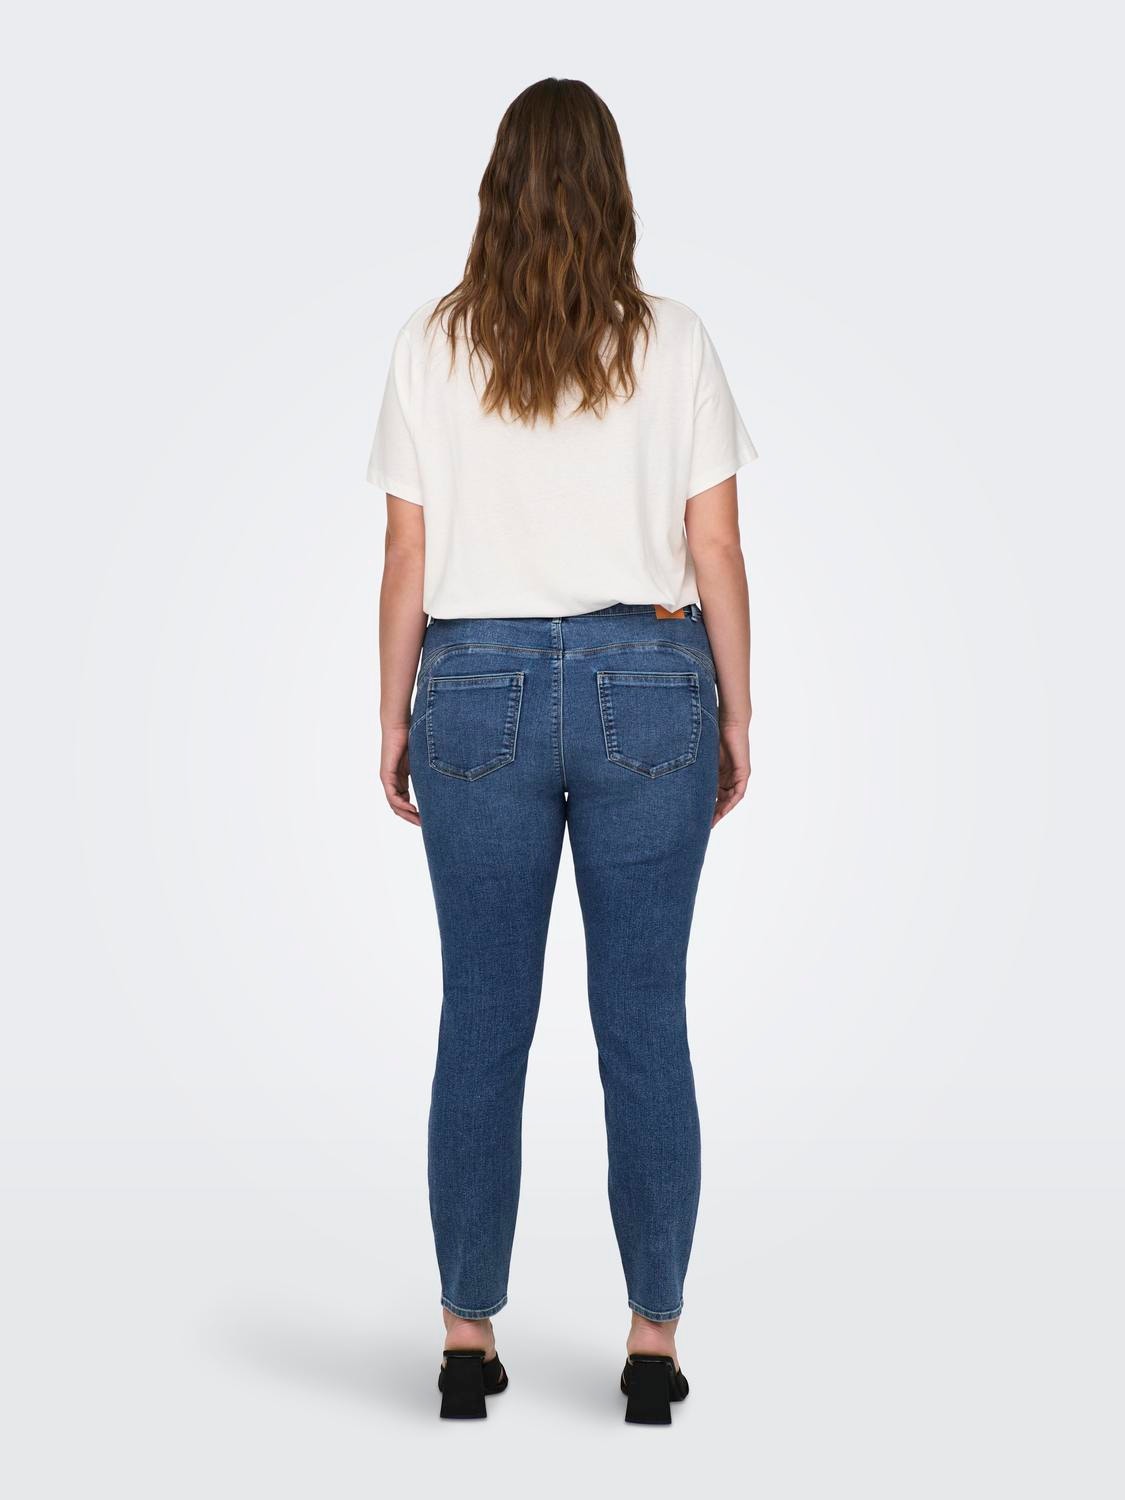 ONLY Skinny Fit Middels høy midje Jeans -Medium Blue Denim - 15300125